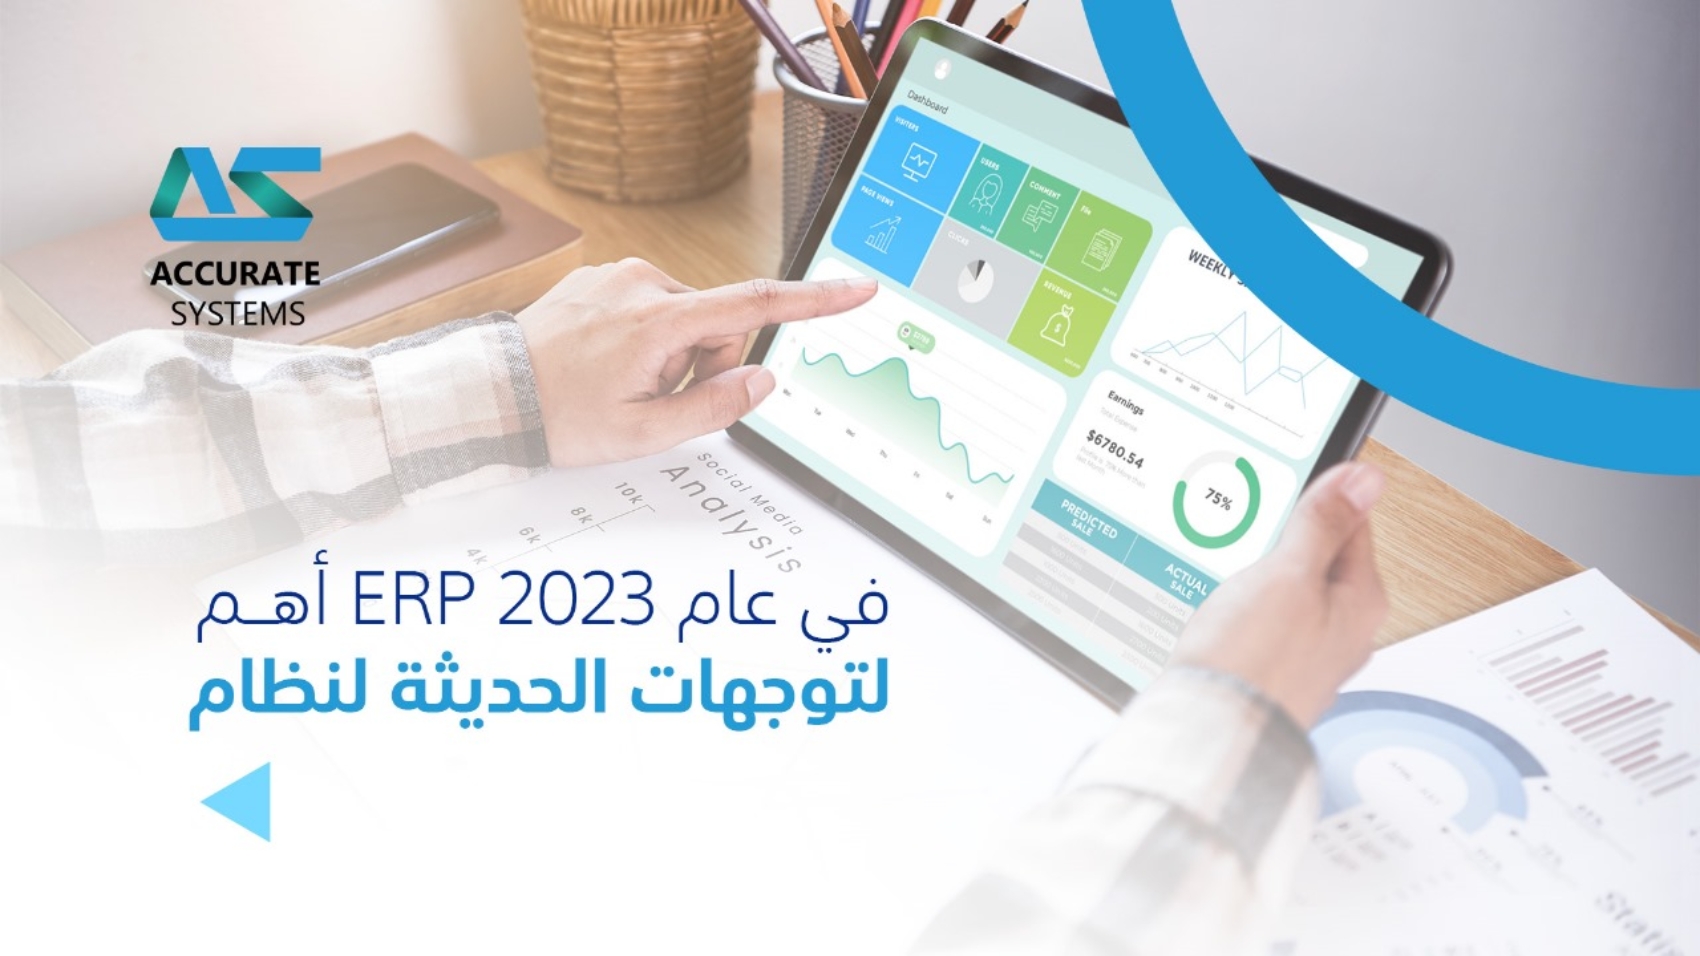 في عام 2023 اهم التوجهات الحديثة لنظام ERP